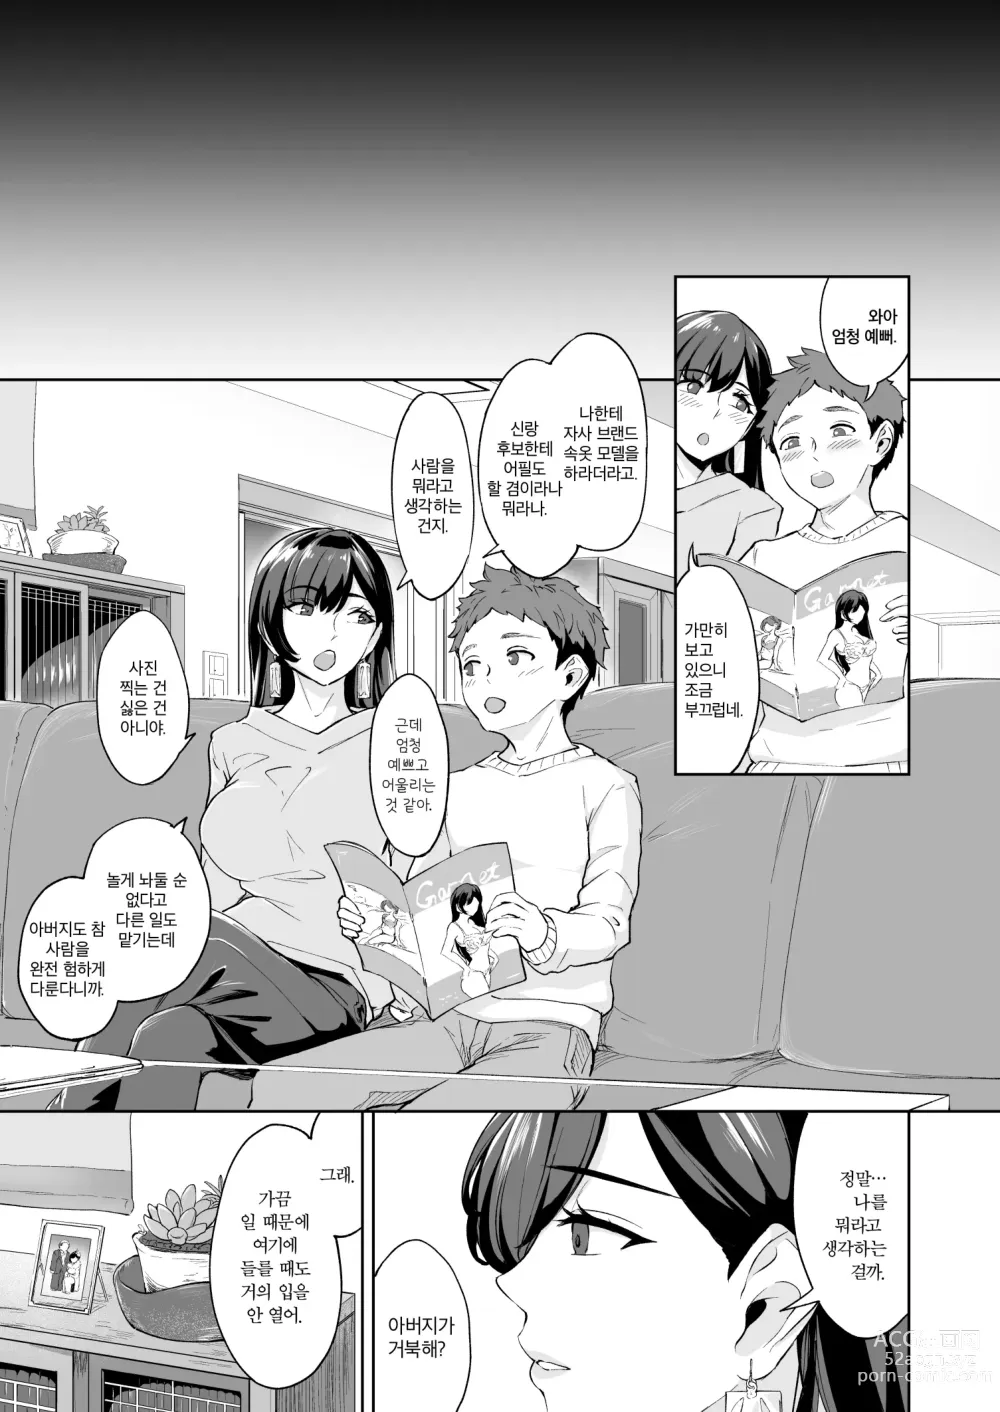 Page 40 of doujinshi 나타난 치녀는 연하킬러인 스카토로 변태였습니다 3